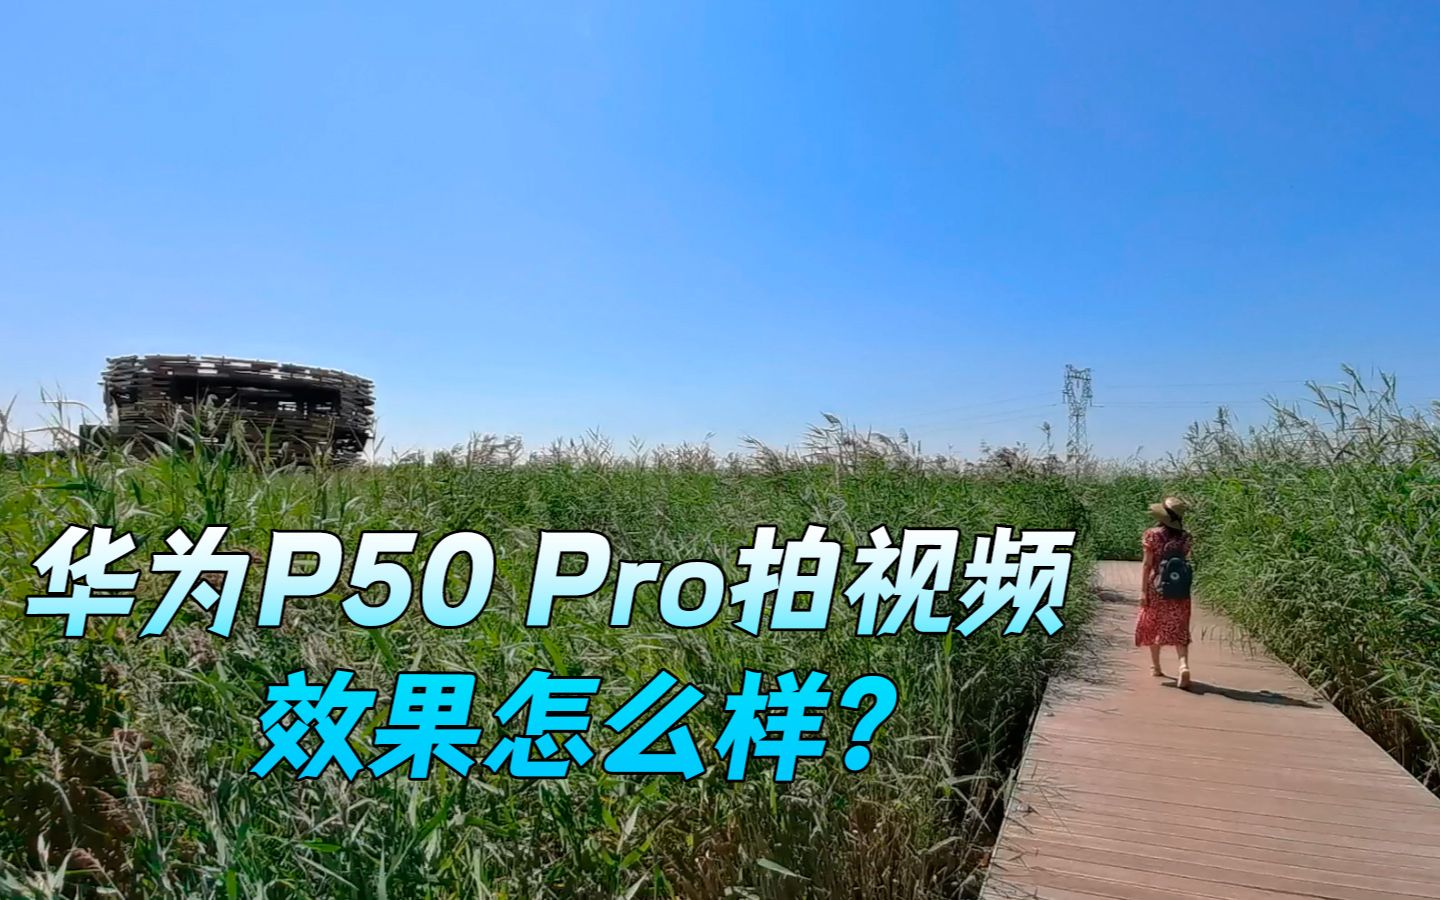 用华为P50 Pro拍摄视频，效果到底怎么样？